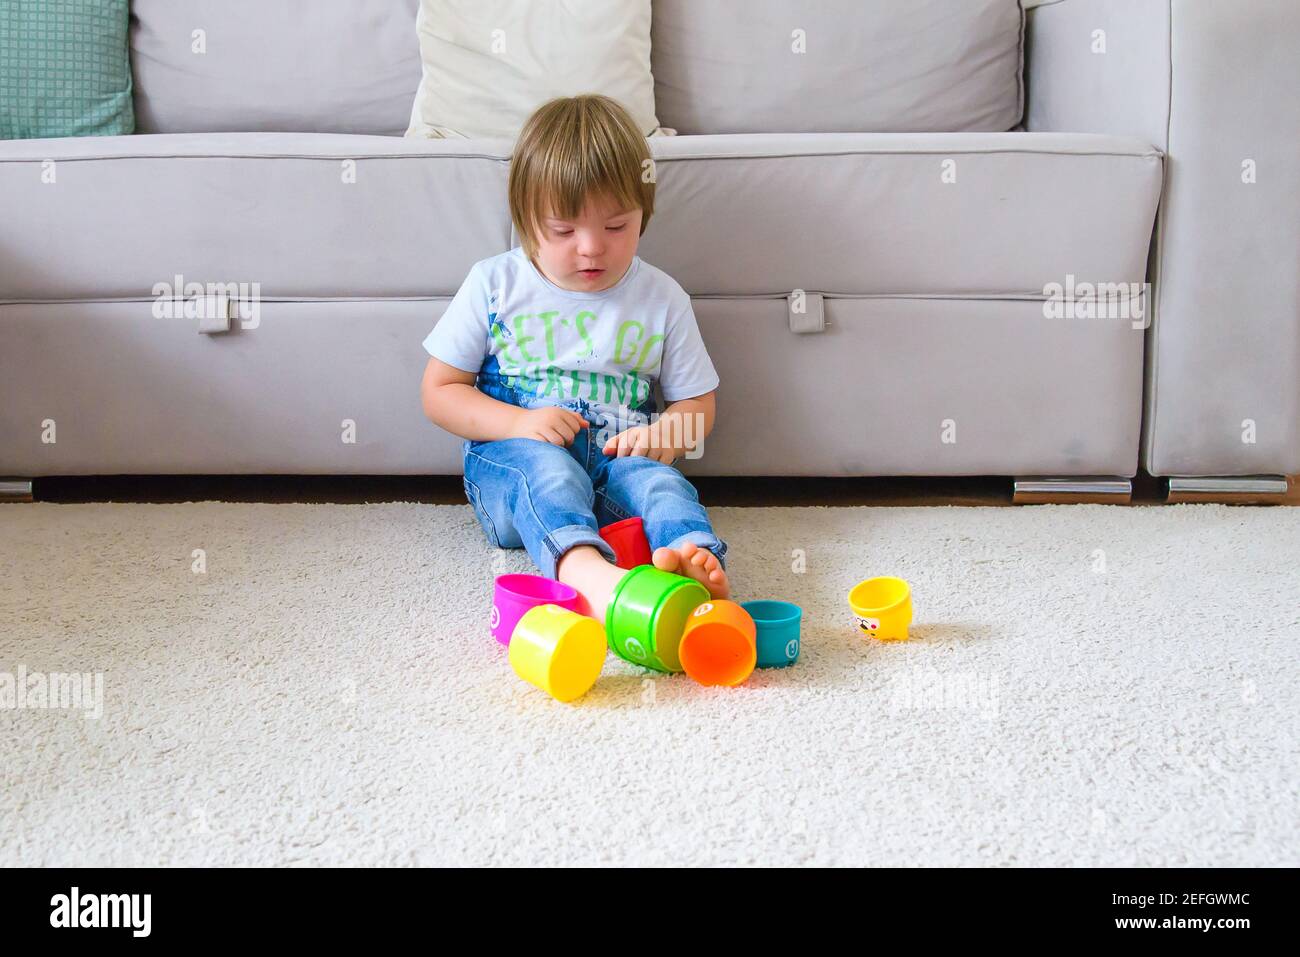 solo bambino con sindrome di down giocare in soggiorno con i suoi giocattoli durante la quarantena covid Foto Stock